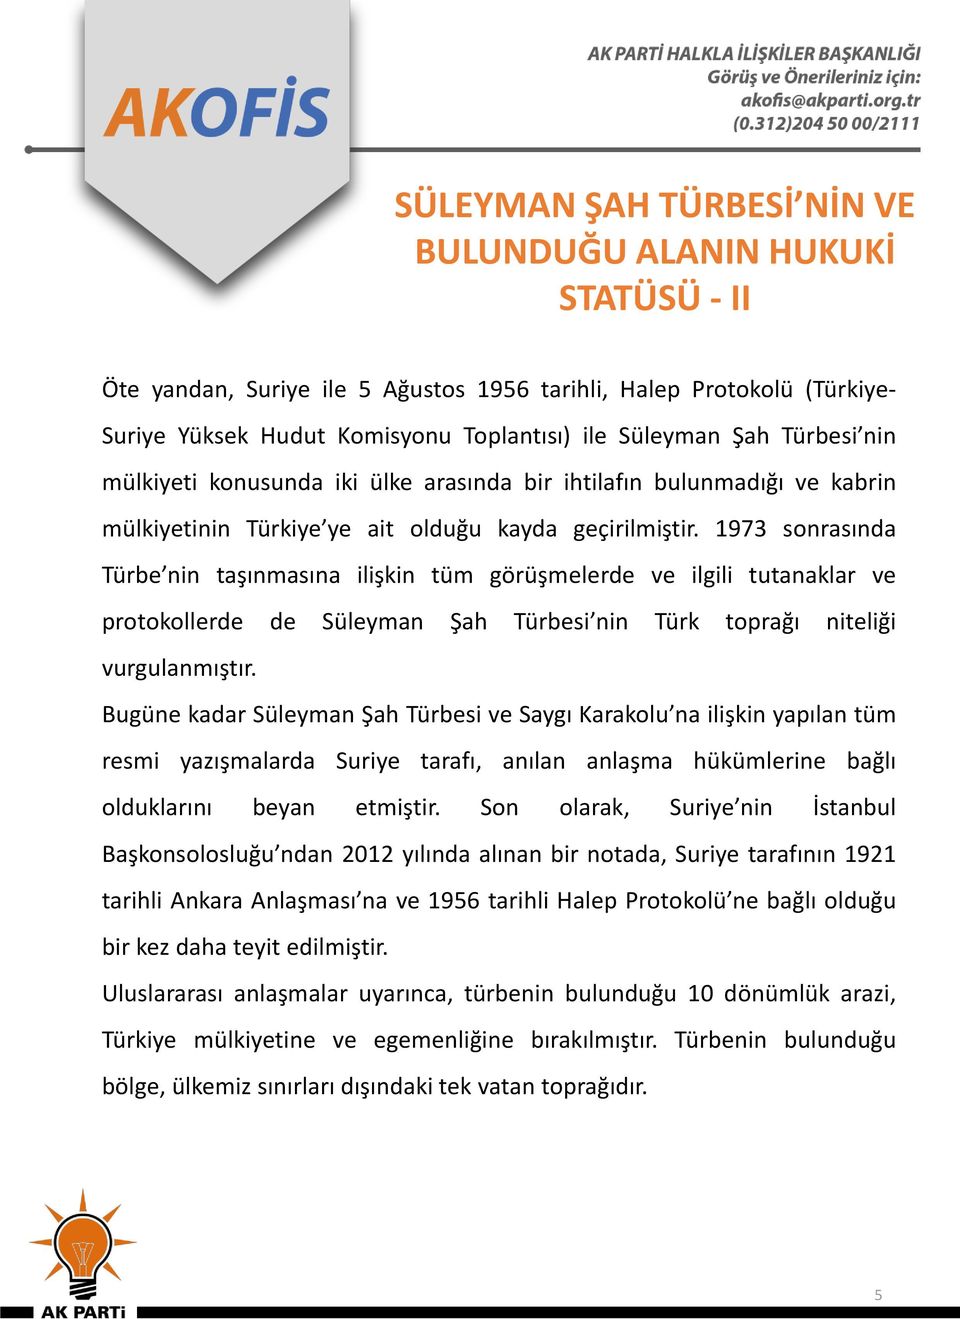 1973 sonrasında Türbe nin taşınmasına ilişkin tüm görüşmelerde ve ilgili tutanaklar ve protokollerde de Süleyman Şah Türbesi nin Türk toprağı niteliği vurgulanmıştır.